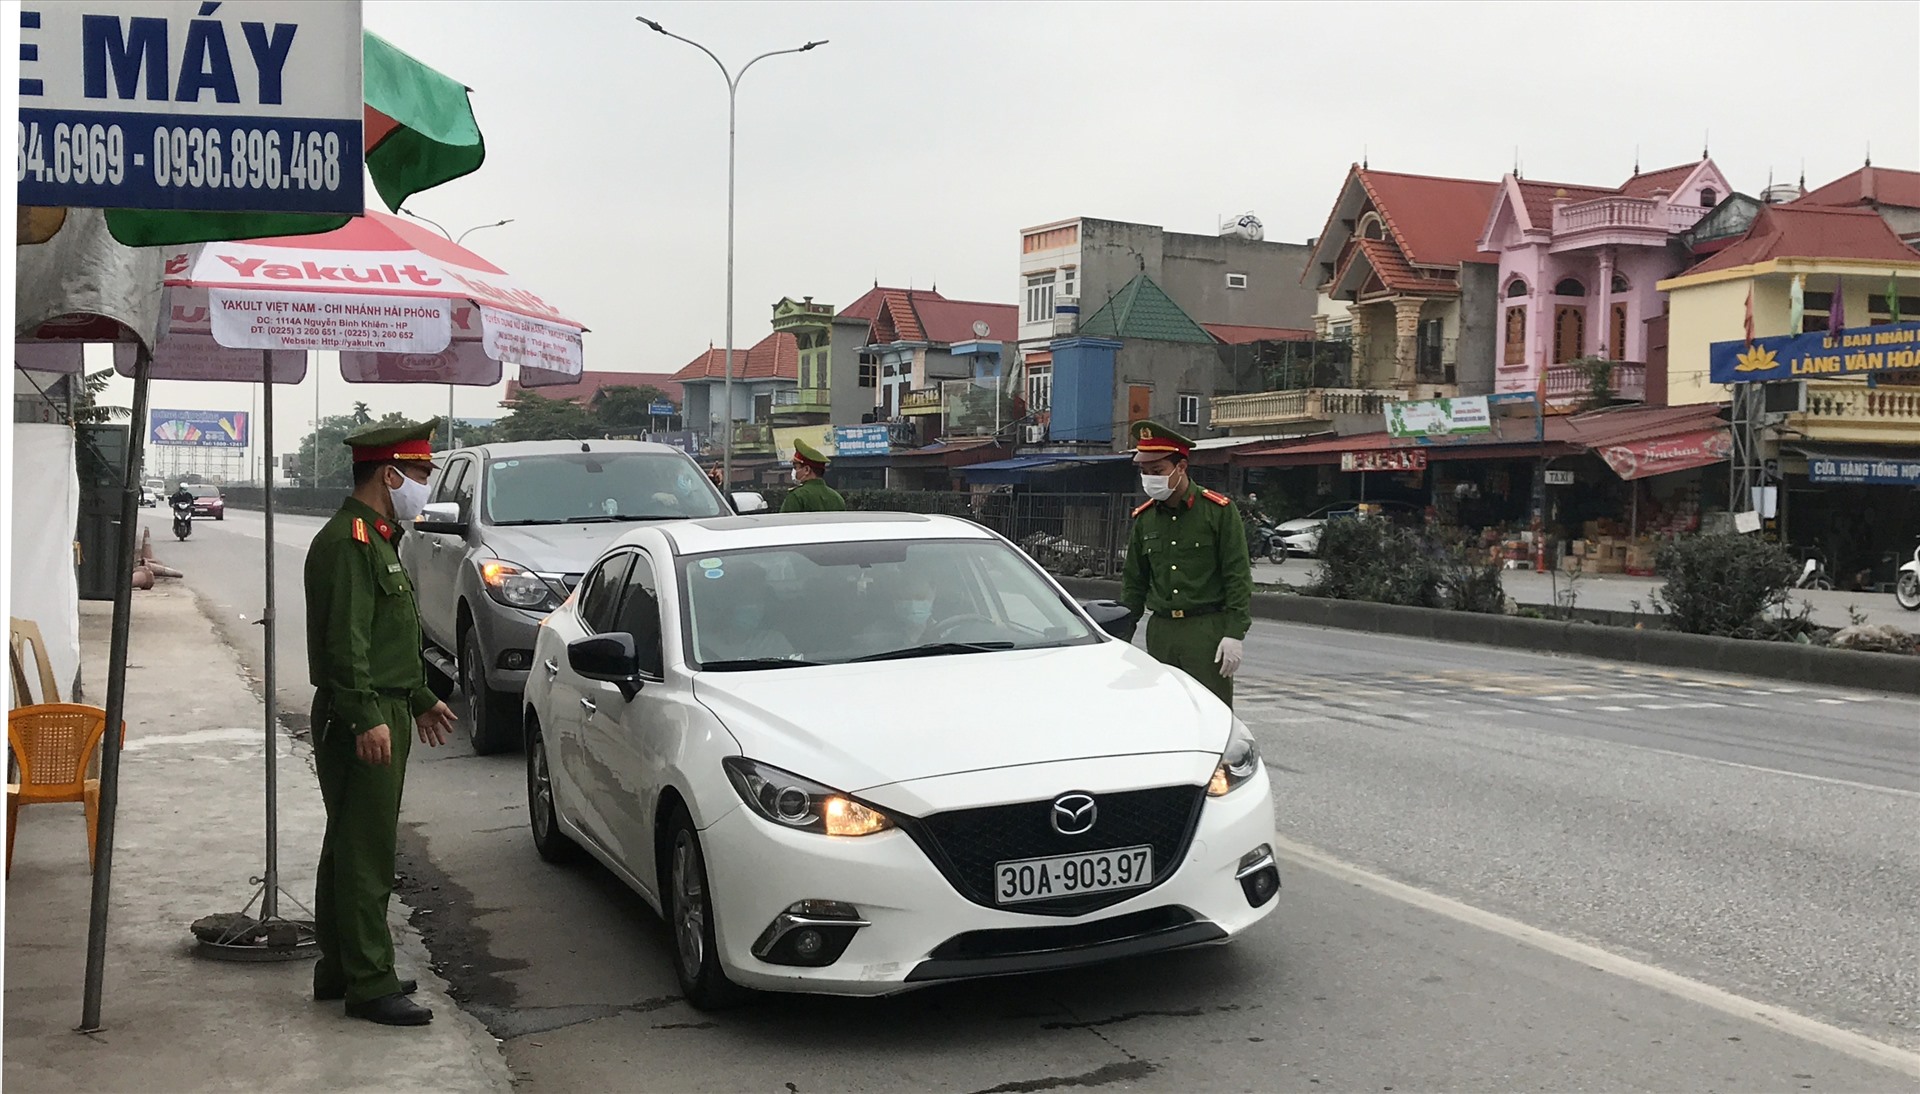 Phương tiện về từ các địa phương trong nhóm nguy cơ cao lây lan dịch COVID-19 như Hà Nội, Bắc Ninh được kiểm soát nghiêm ngặt. Ảnh Đặng Luân